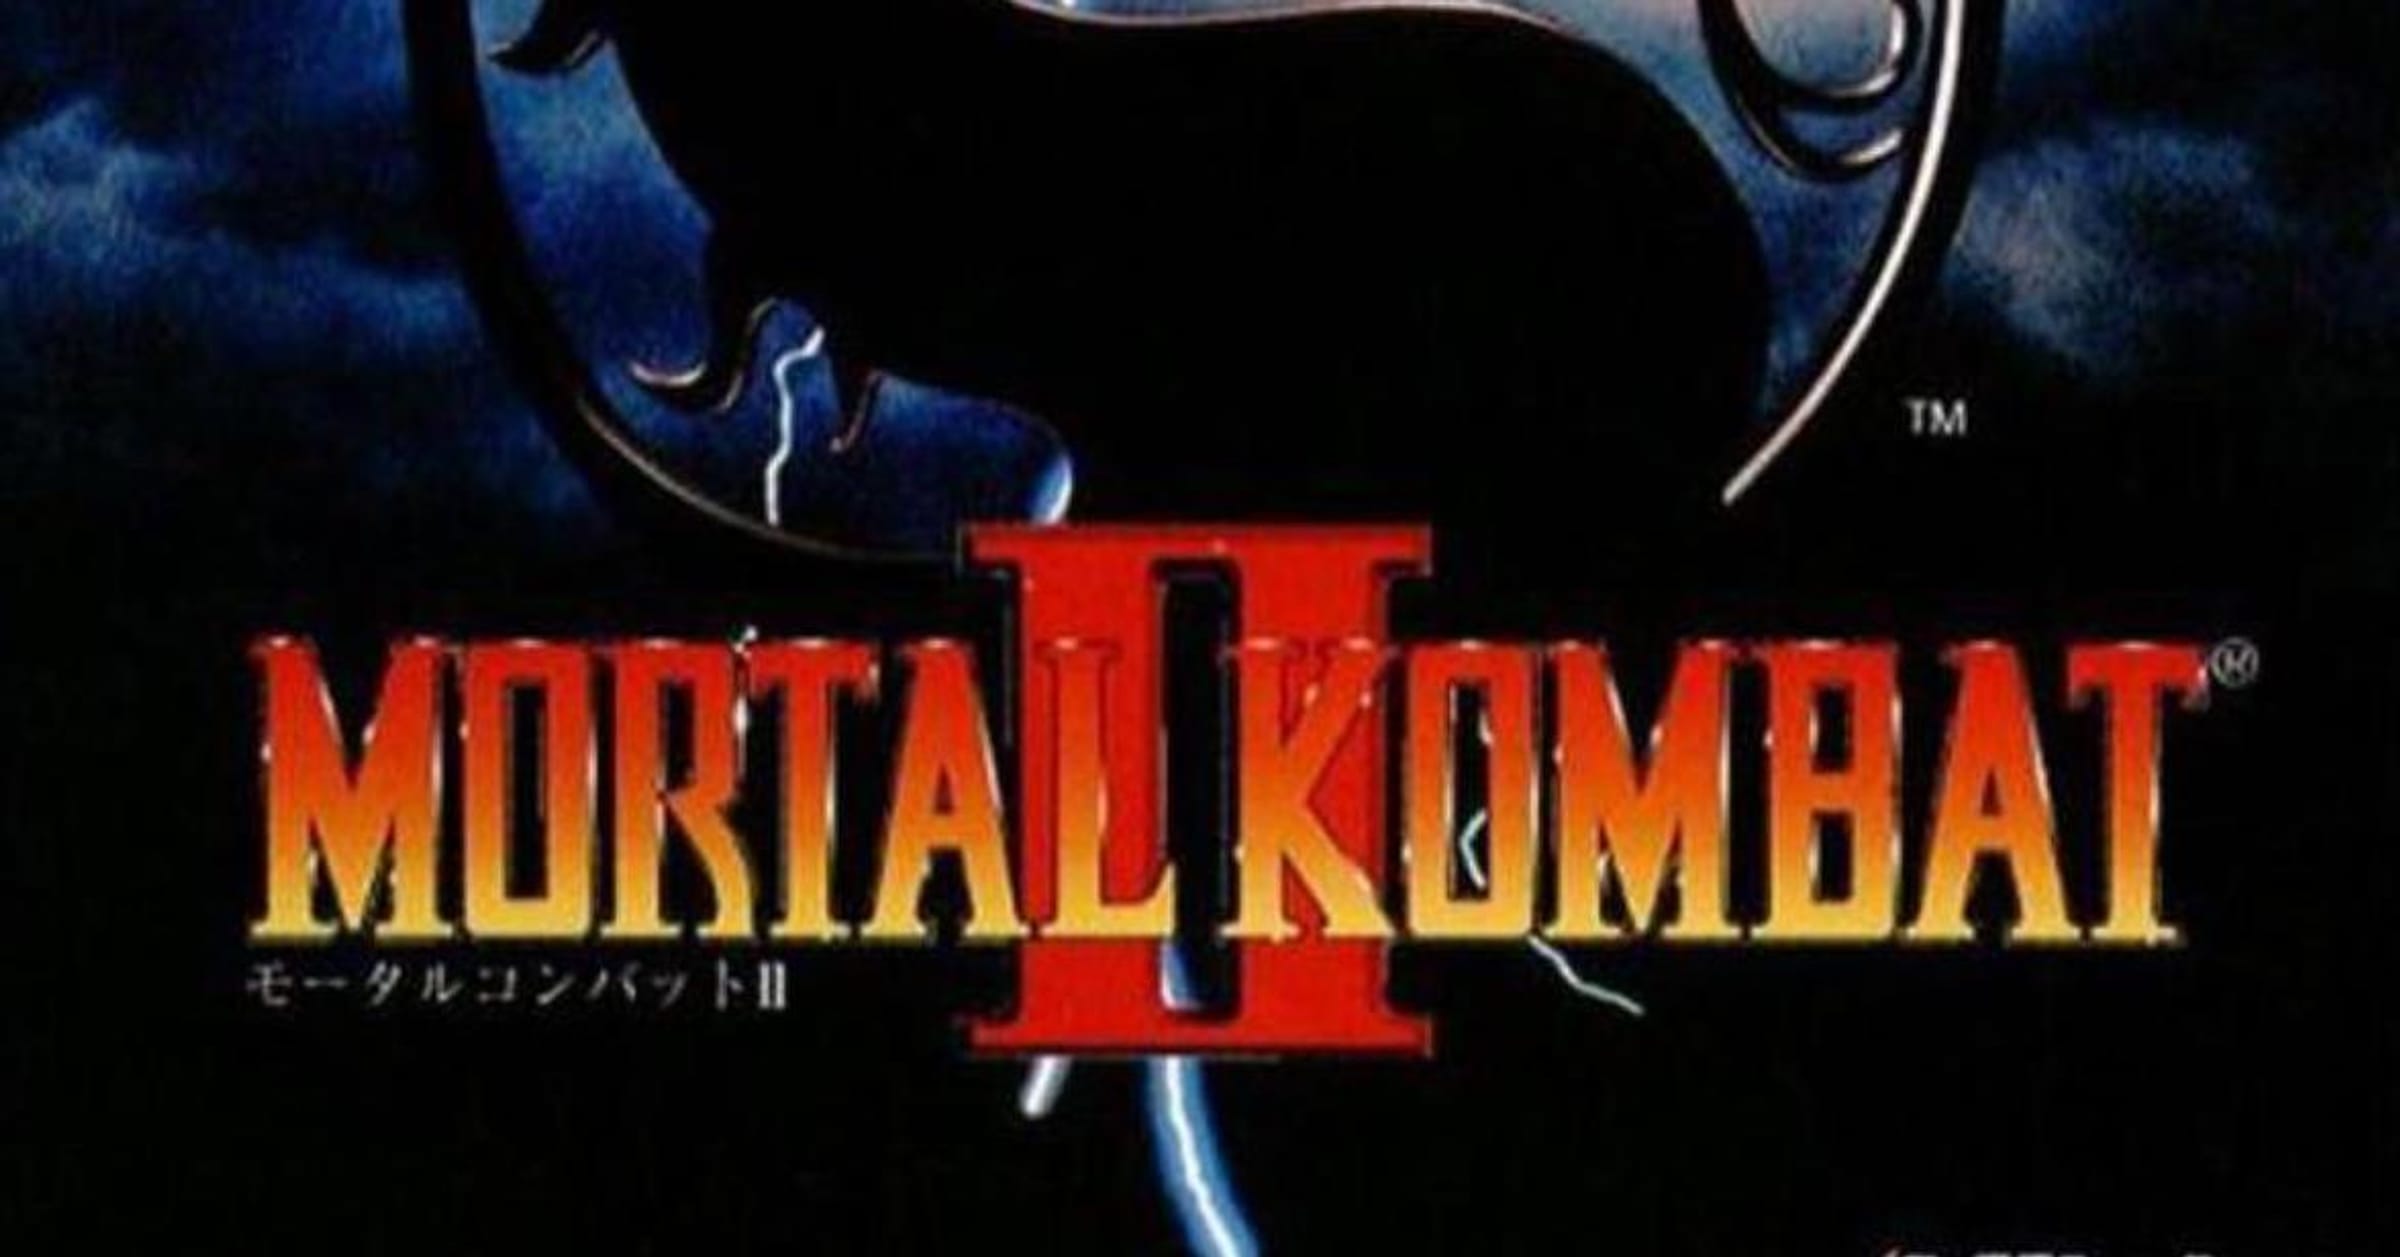 Mortal Kombat 4 (Europe) : Midway Games, Inc. : Free Download